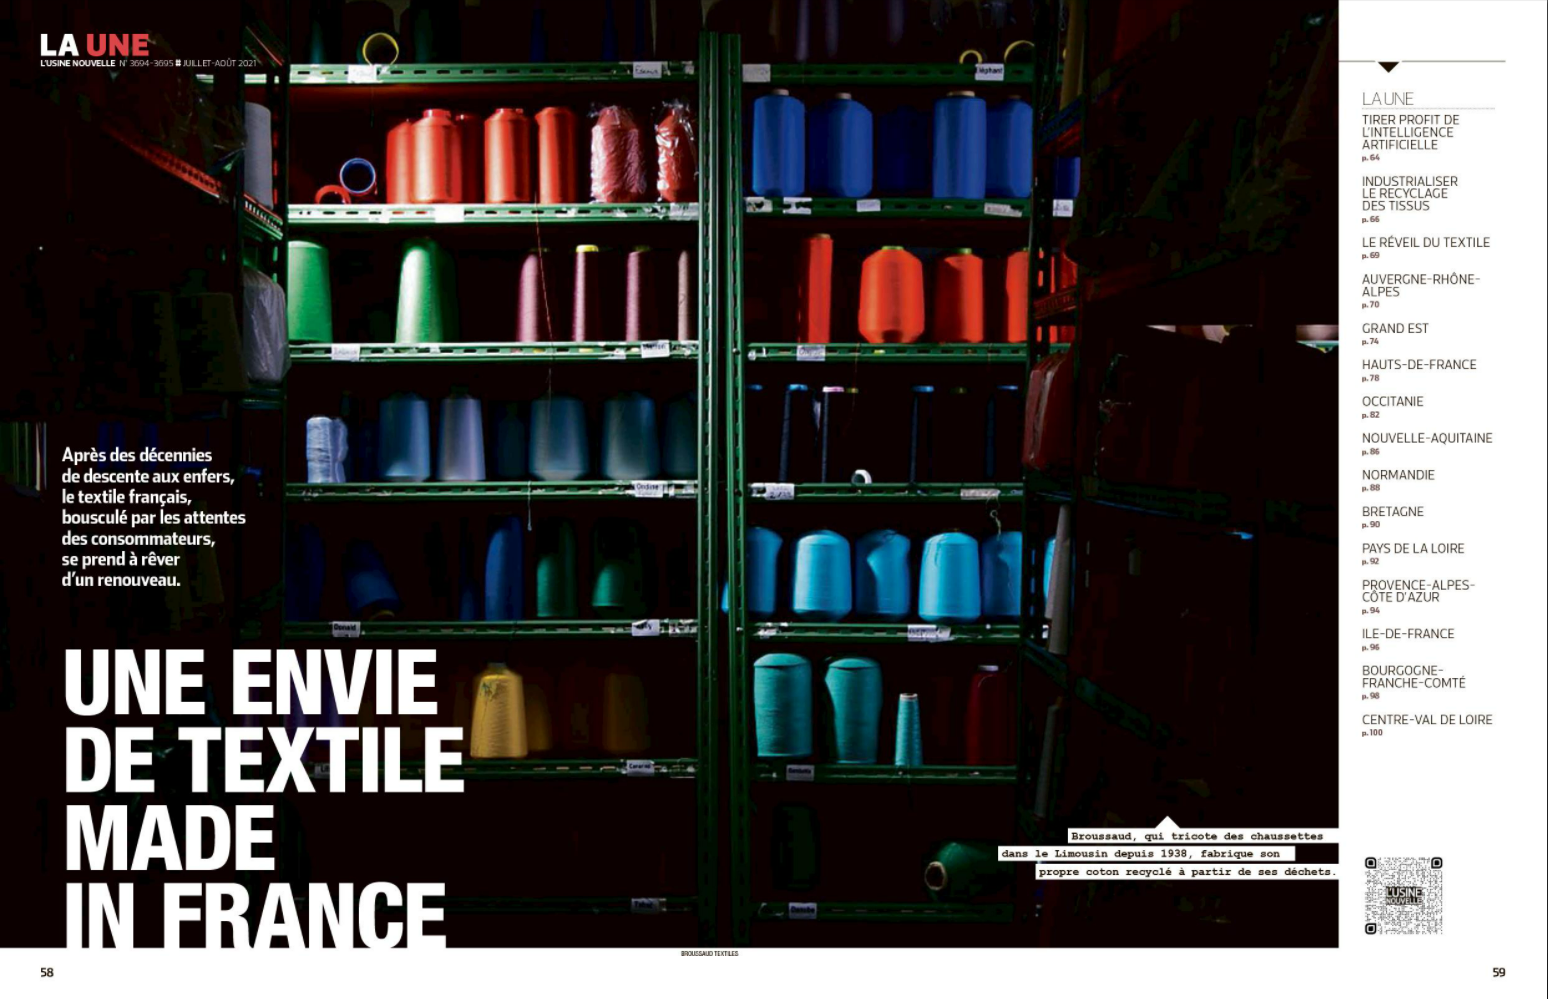 Le réveil du textile français, dossier de l’Usine Nouvelle